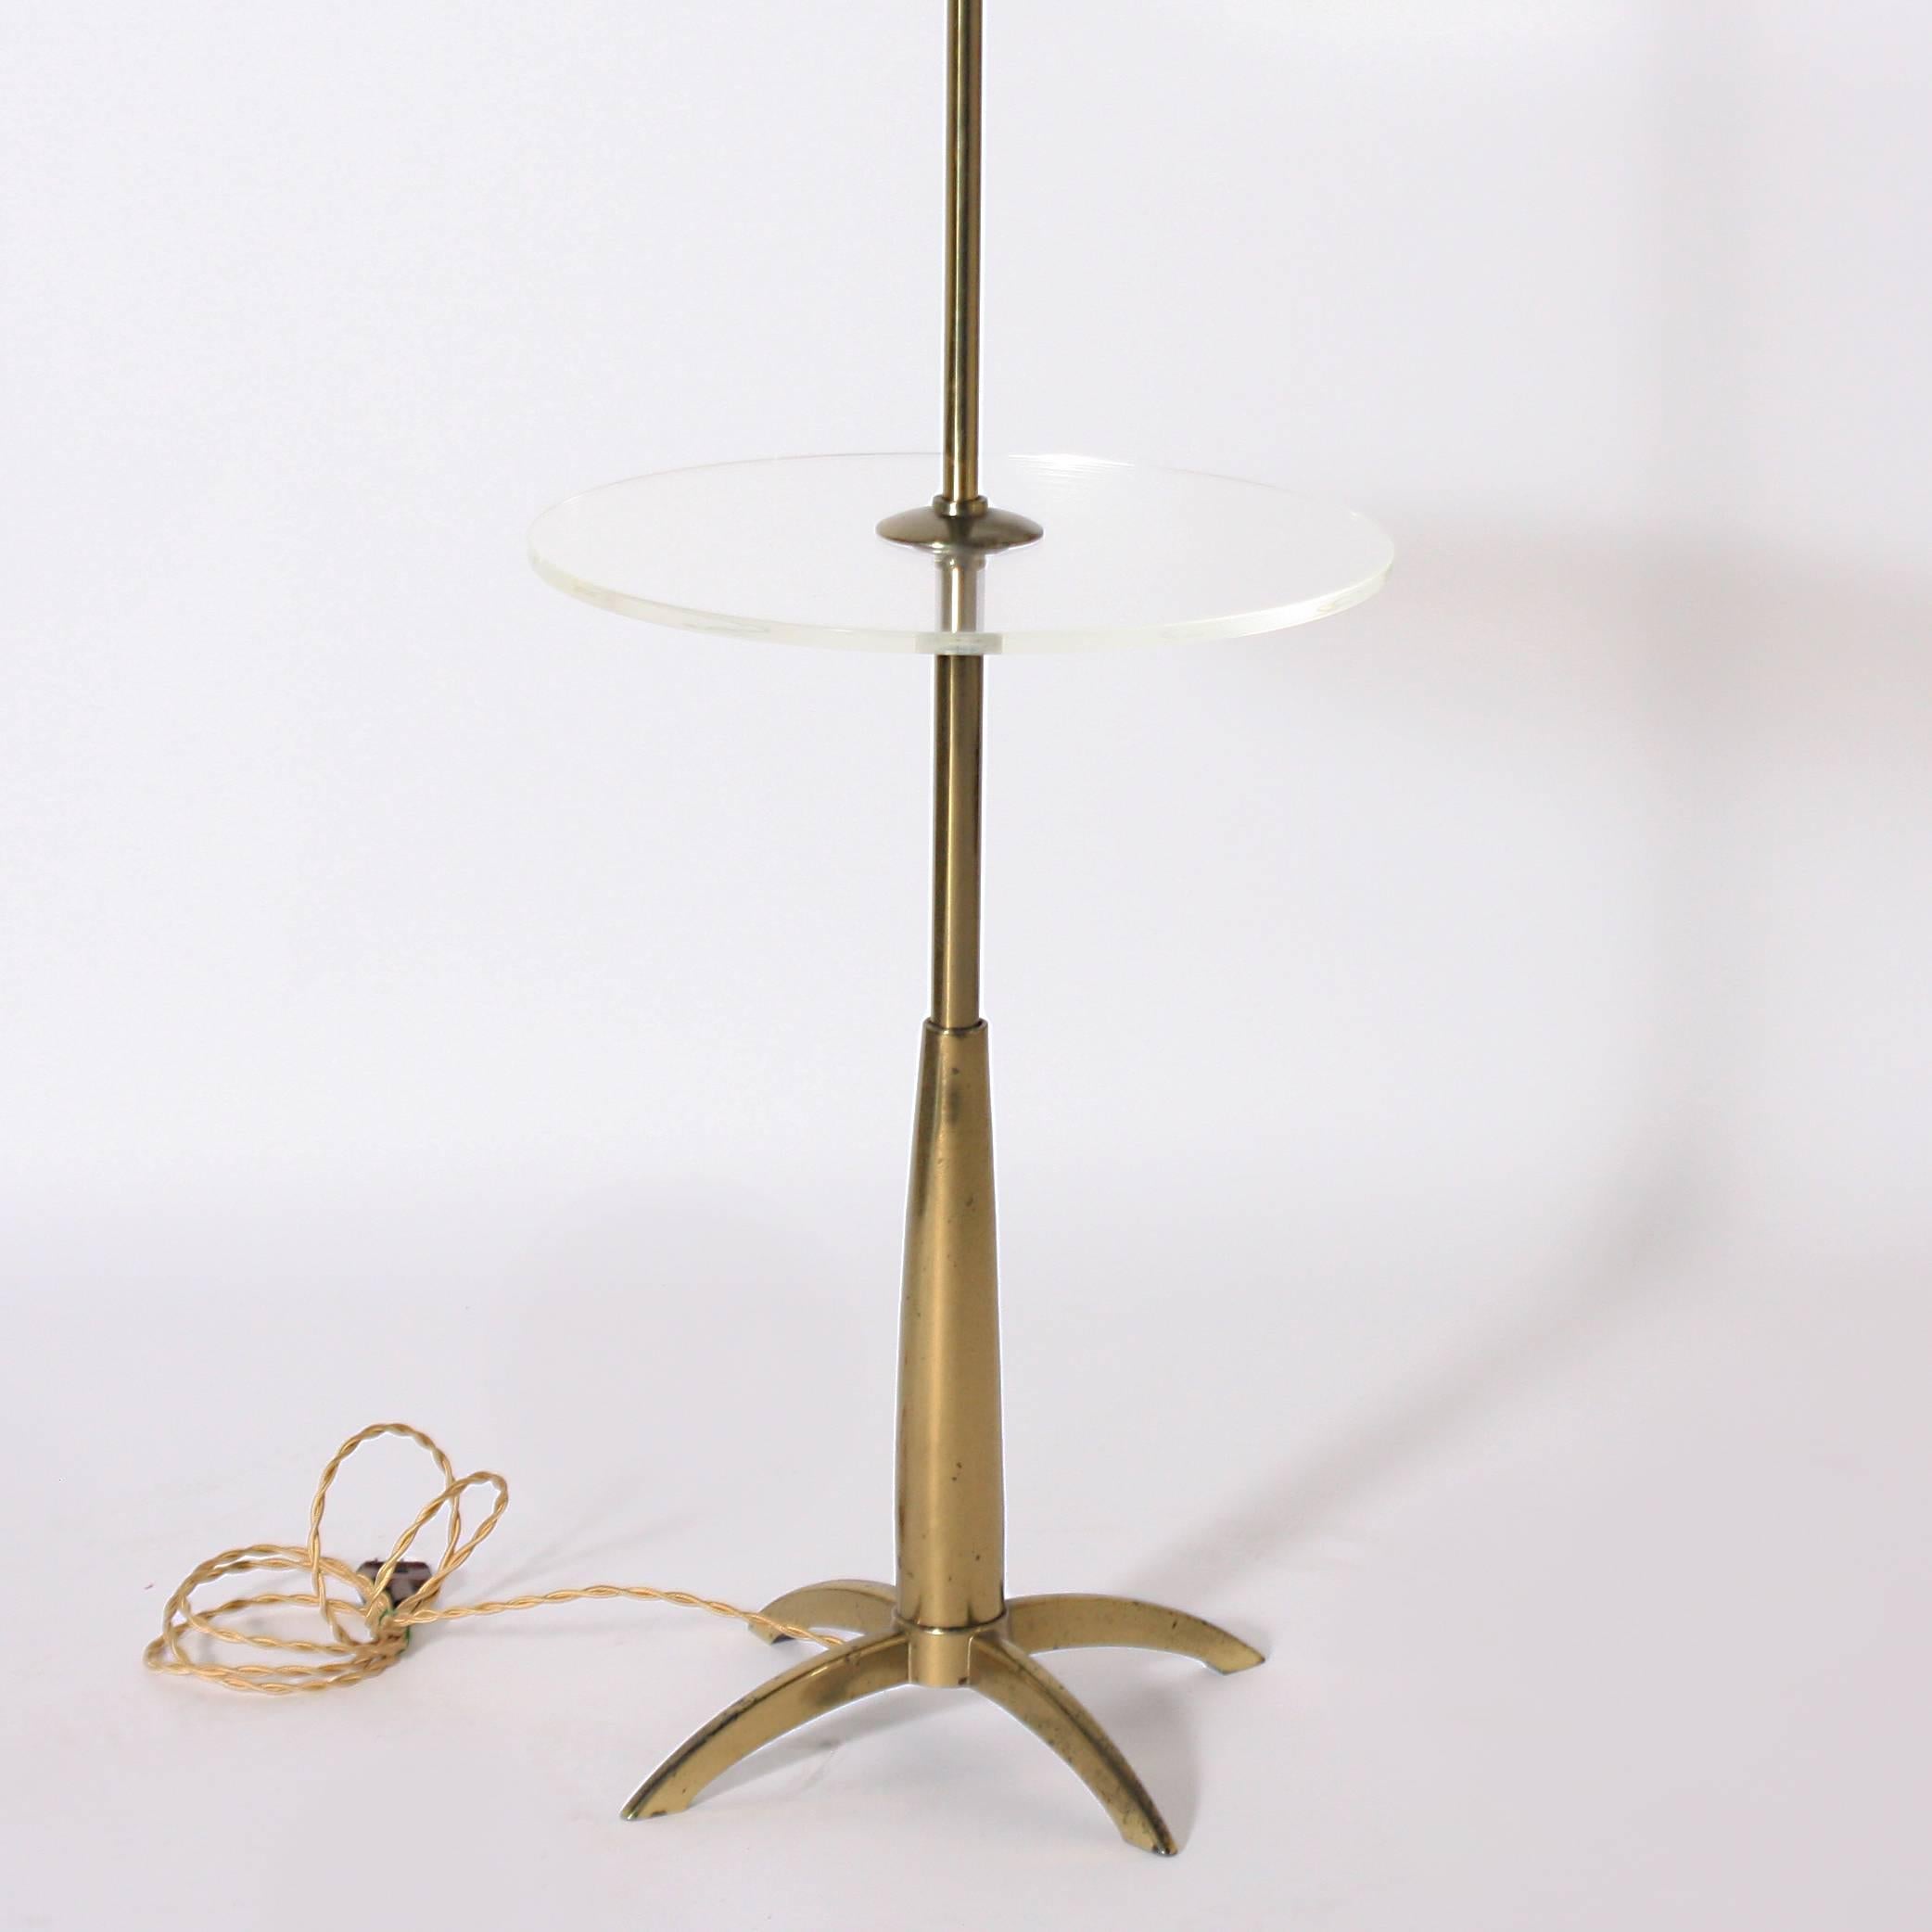 Brass and Lucite Stiffel floor lamp, circa 1960.

Measures: 18